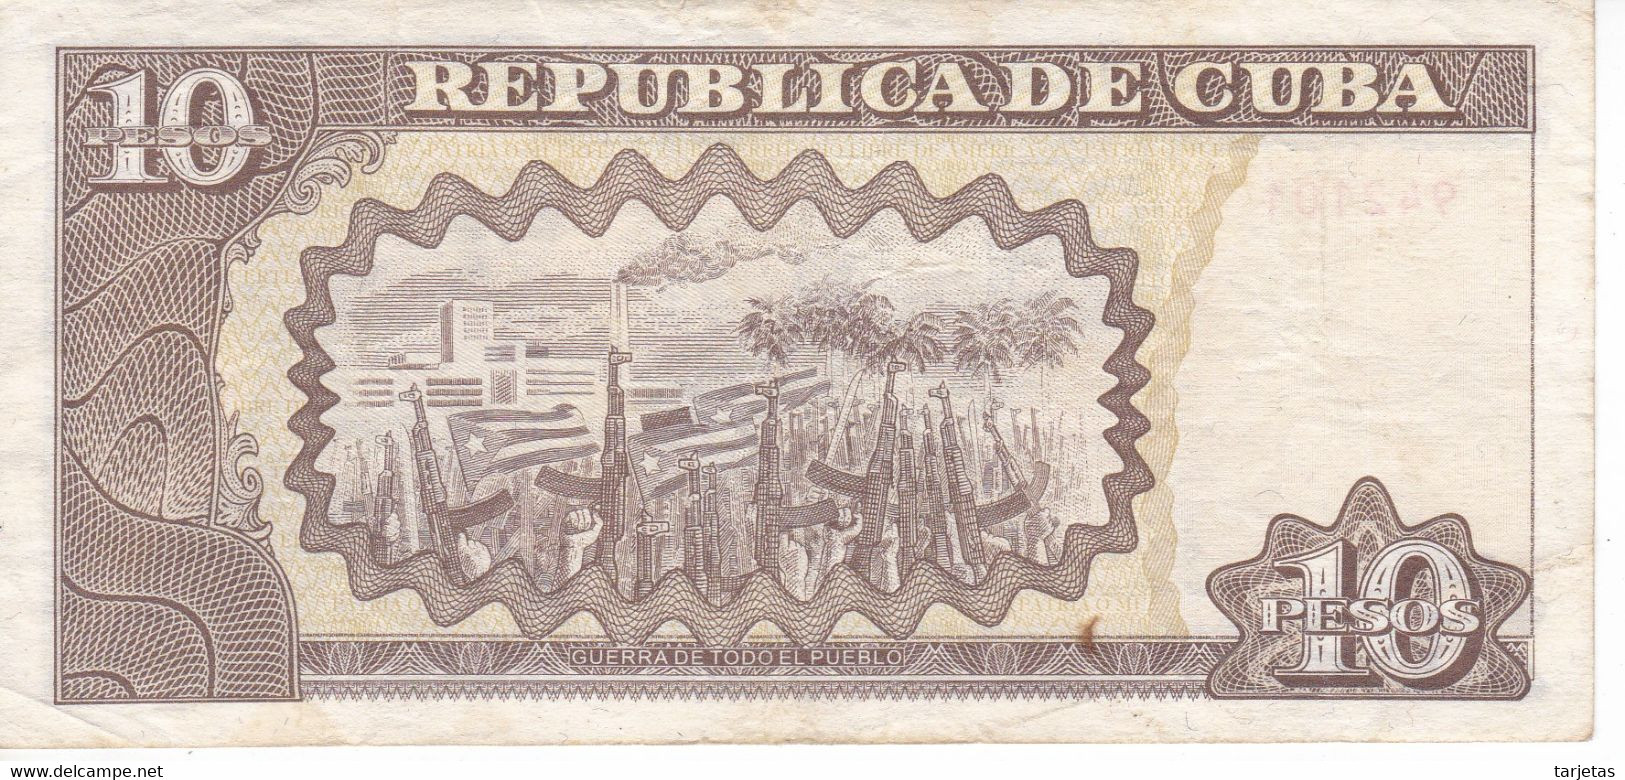 BILLETE DE CUBA DE 10 PESOS DEL AÑO 2002 (BANKNOTE) MAXIMO GOMEZ - Kuba